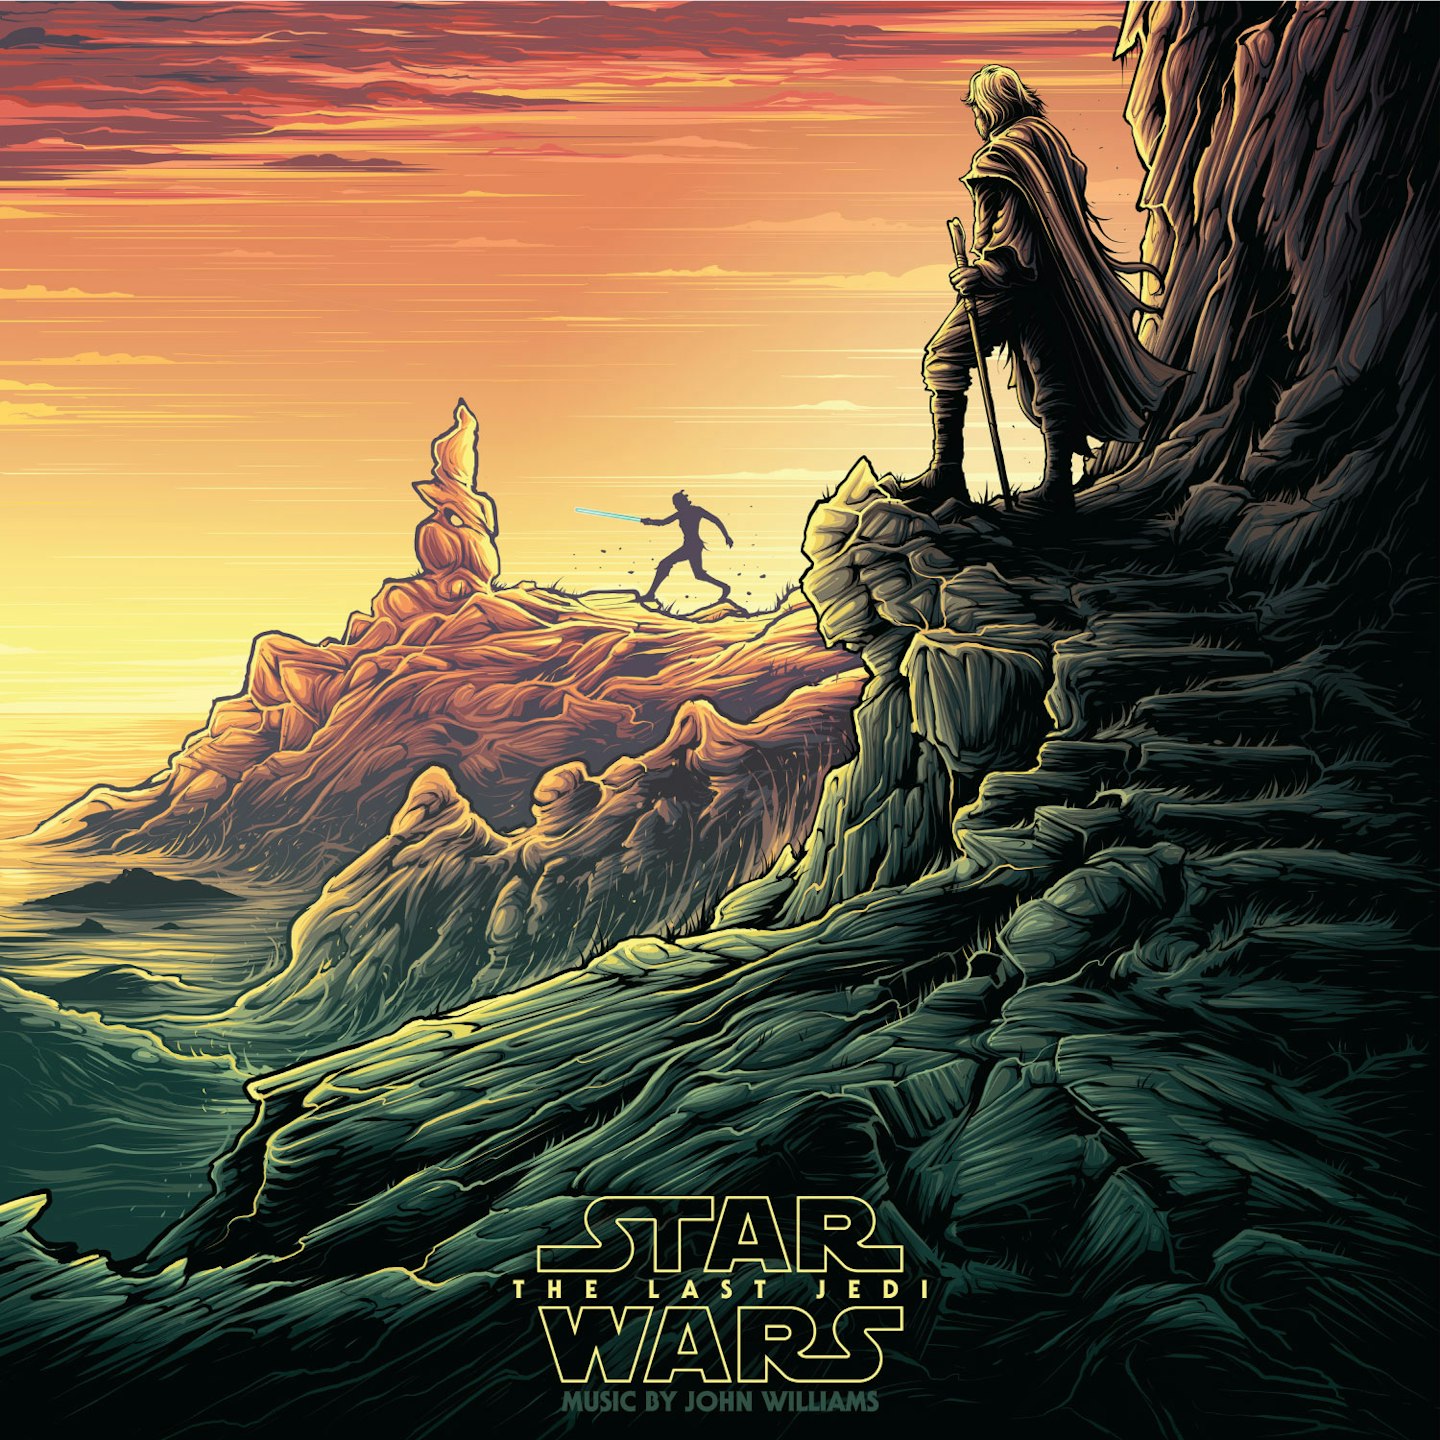 Star Wars: The Last Jedi vinyl 